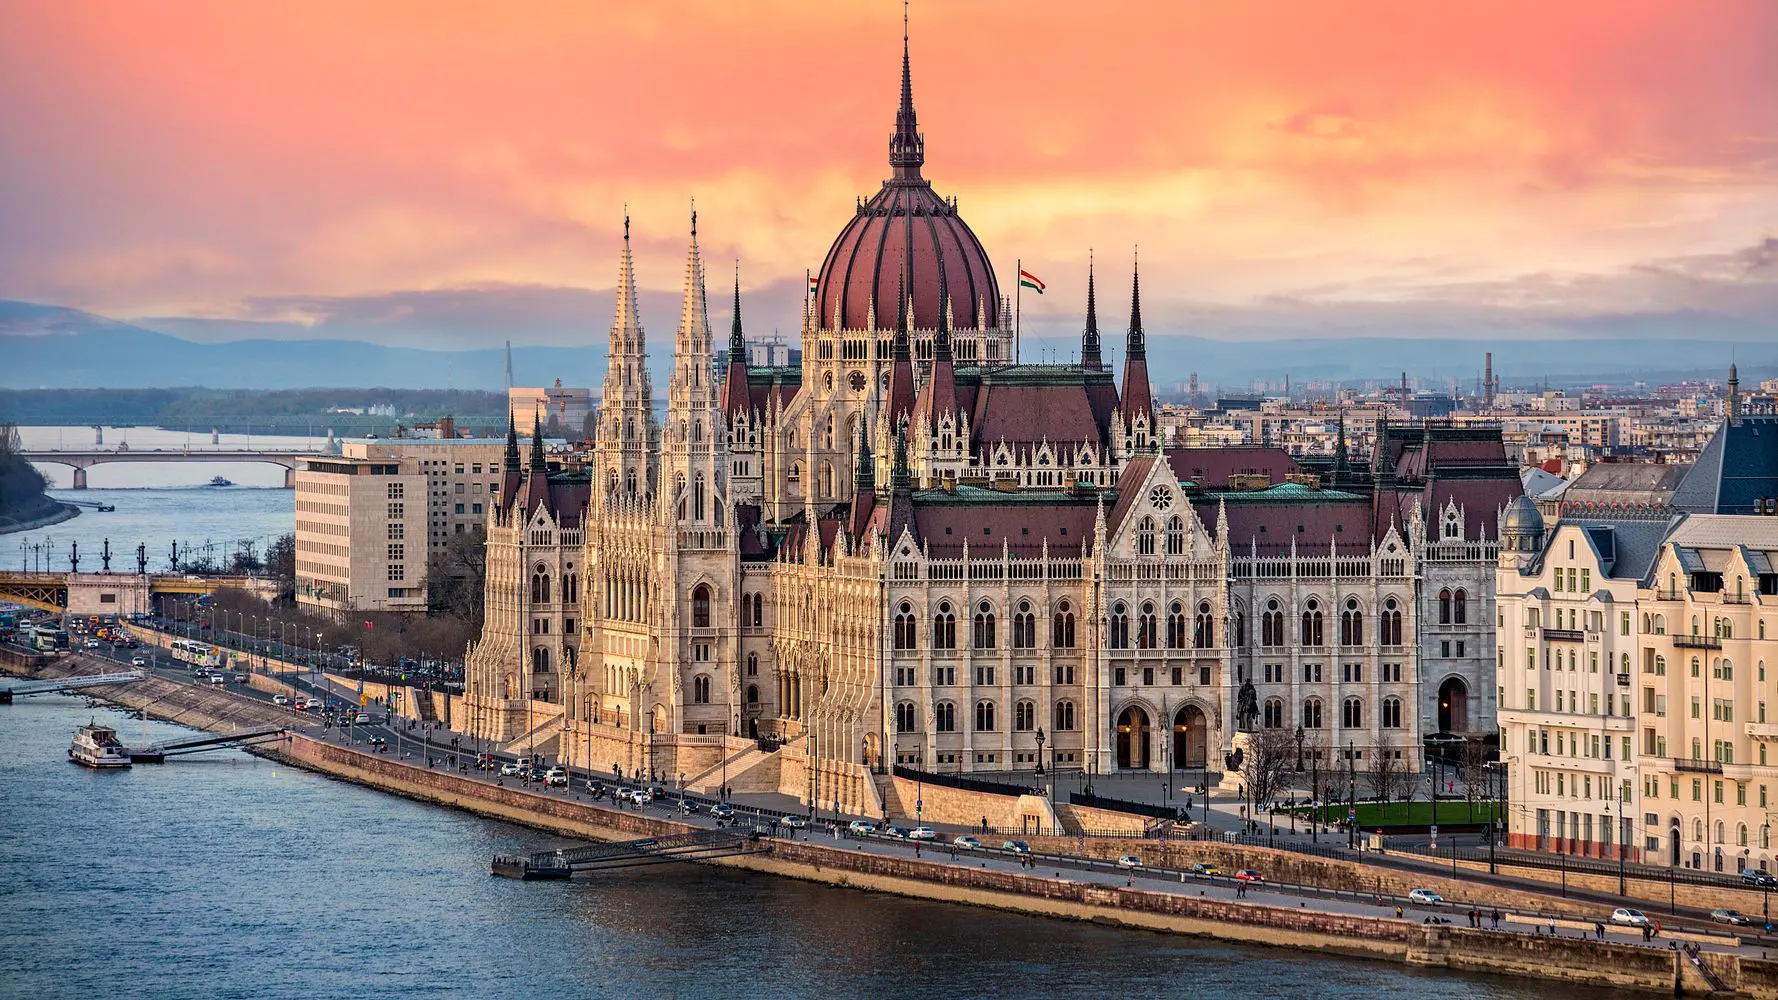 عاصمة المجر